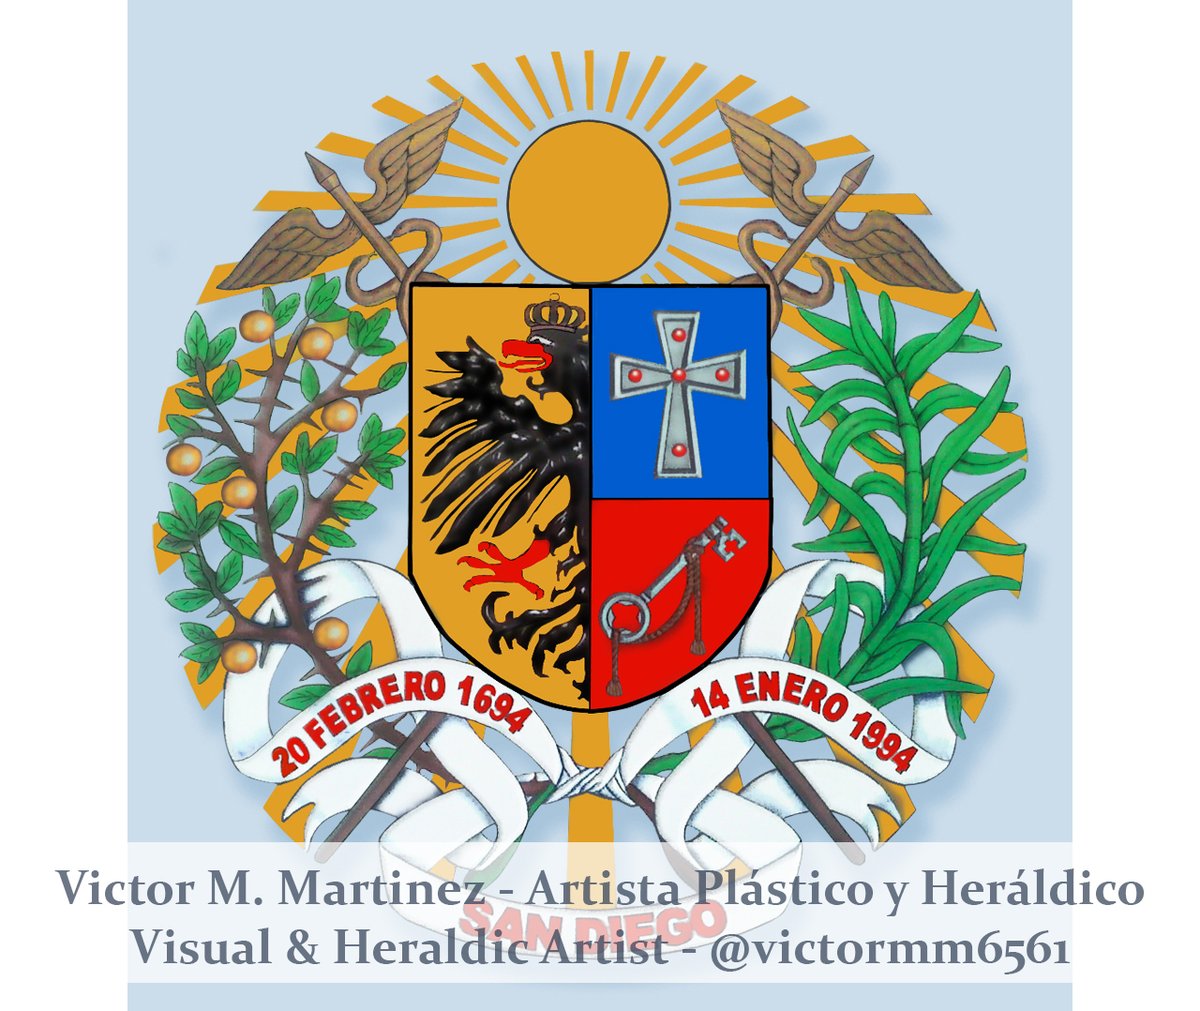 Escudo de Armas del Municipio San Diego del estado Carabobo. Fundada el 14 de Febrero de 1.694. Arte y diseño por el artista Plástico y Heráldico Victor M. Martinez, por favor siga y apoye mi obra #Venezuela 🇻🇪

#SanDiego ♥ #art #arte #heraldry #Heraldica #digitalart #Carabobo